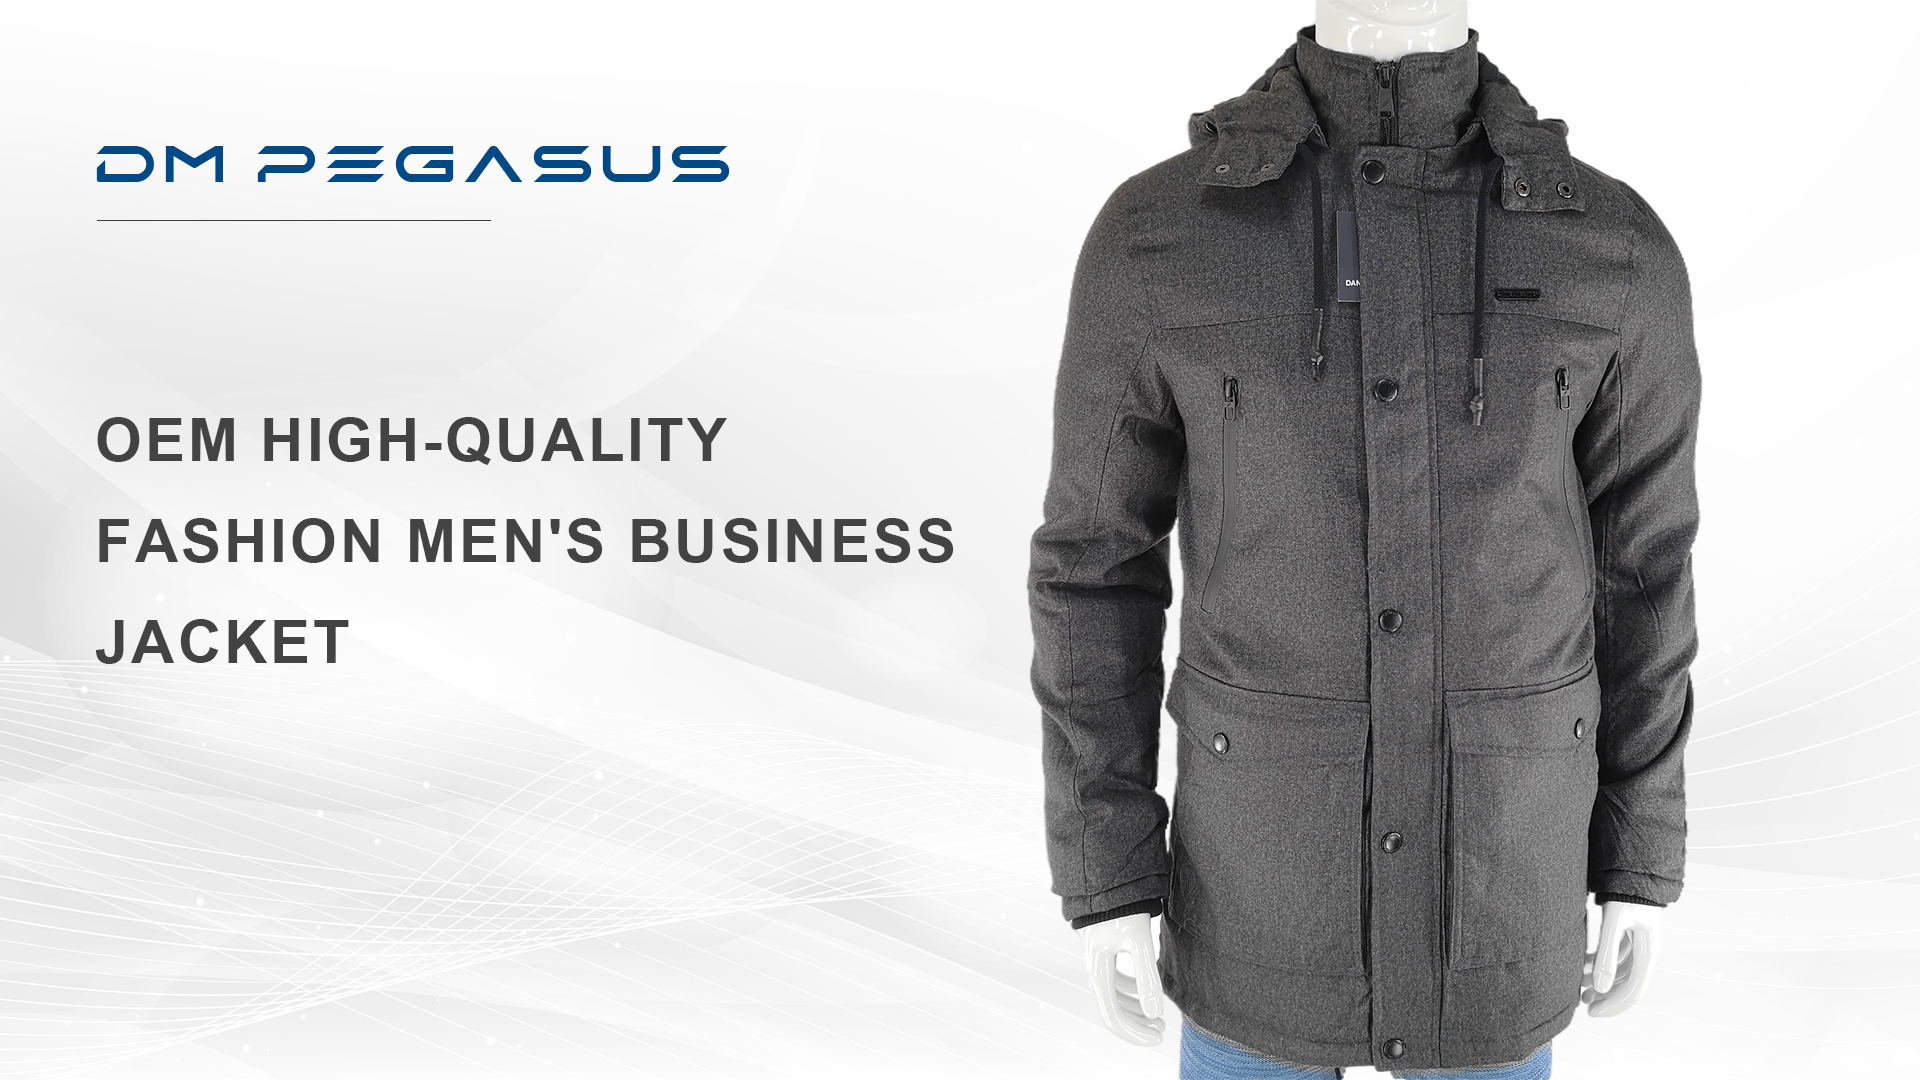 男性のためのOEM高品質ファッションビジネスジャケット